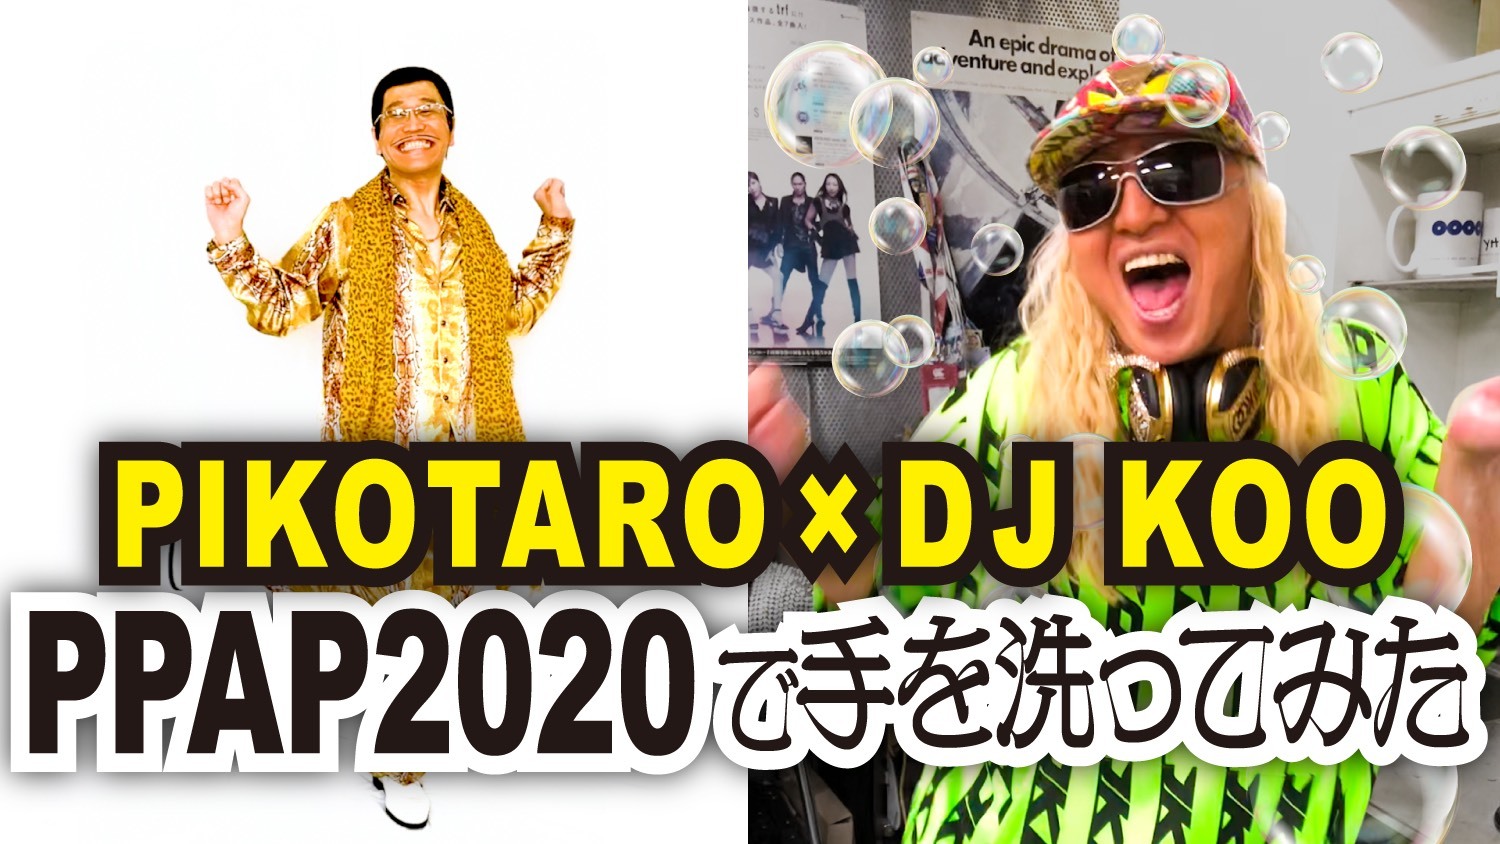 『PPAP-2020-/PIKOTARO(ピコ太郎)×DJ KOO (TRF)』